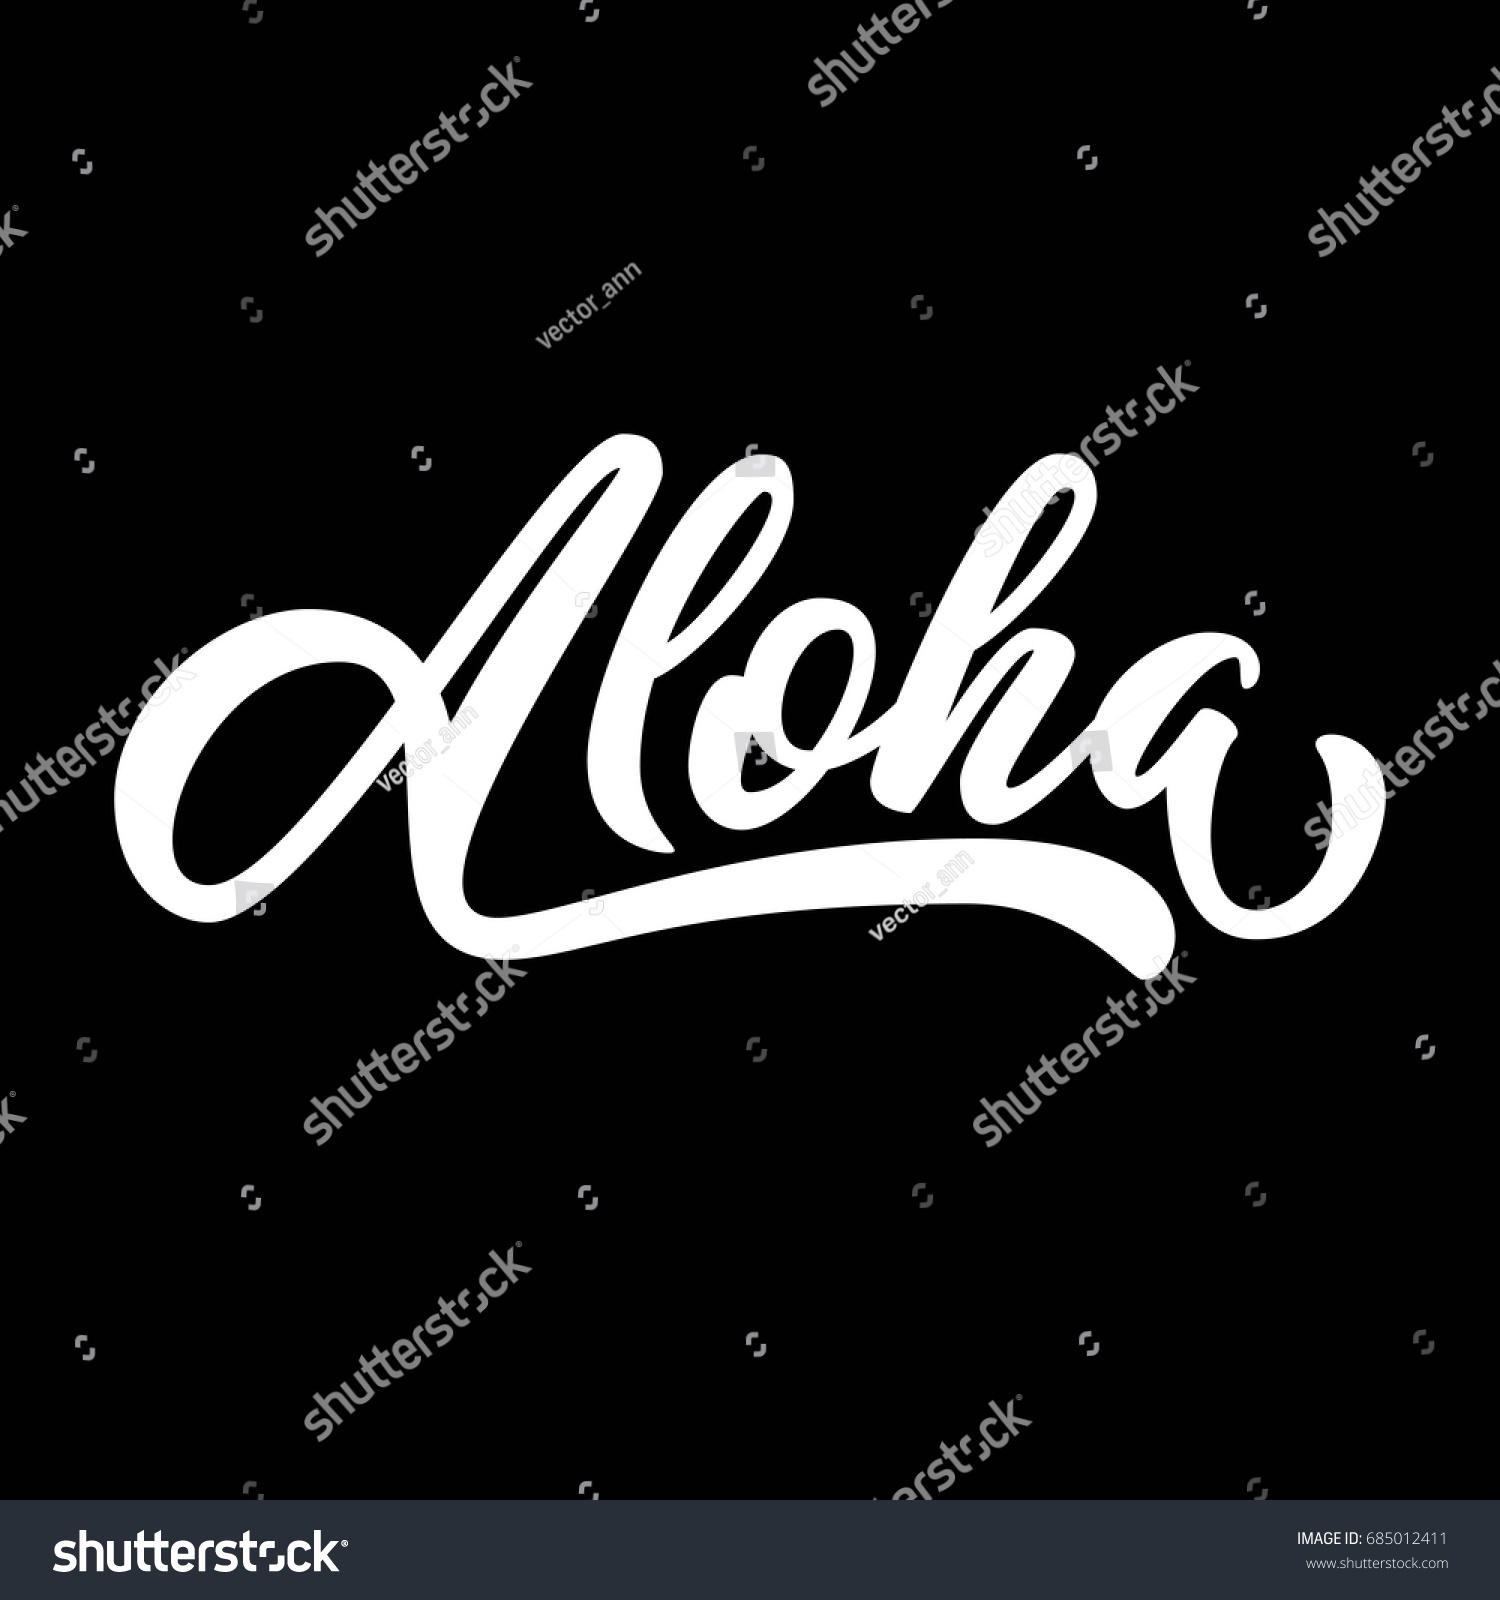 アロハの手書きの文字 ユーザー設定の手書きの文字 ハワイ語のあいさつ文 ベクターイラスト のベクター画像素材 ロイヤリティフリー